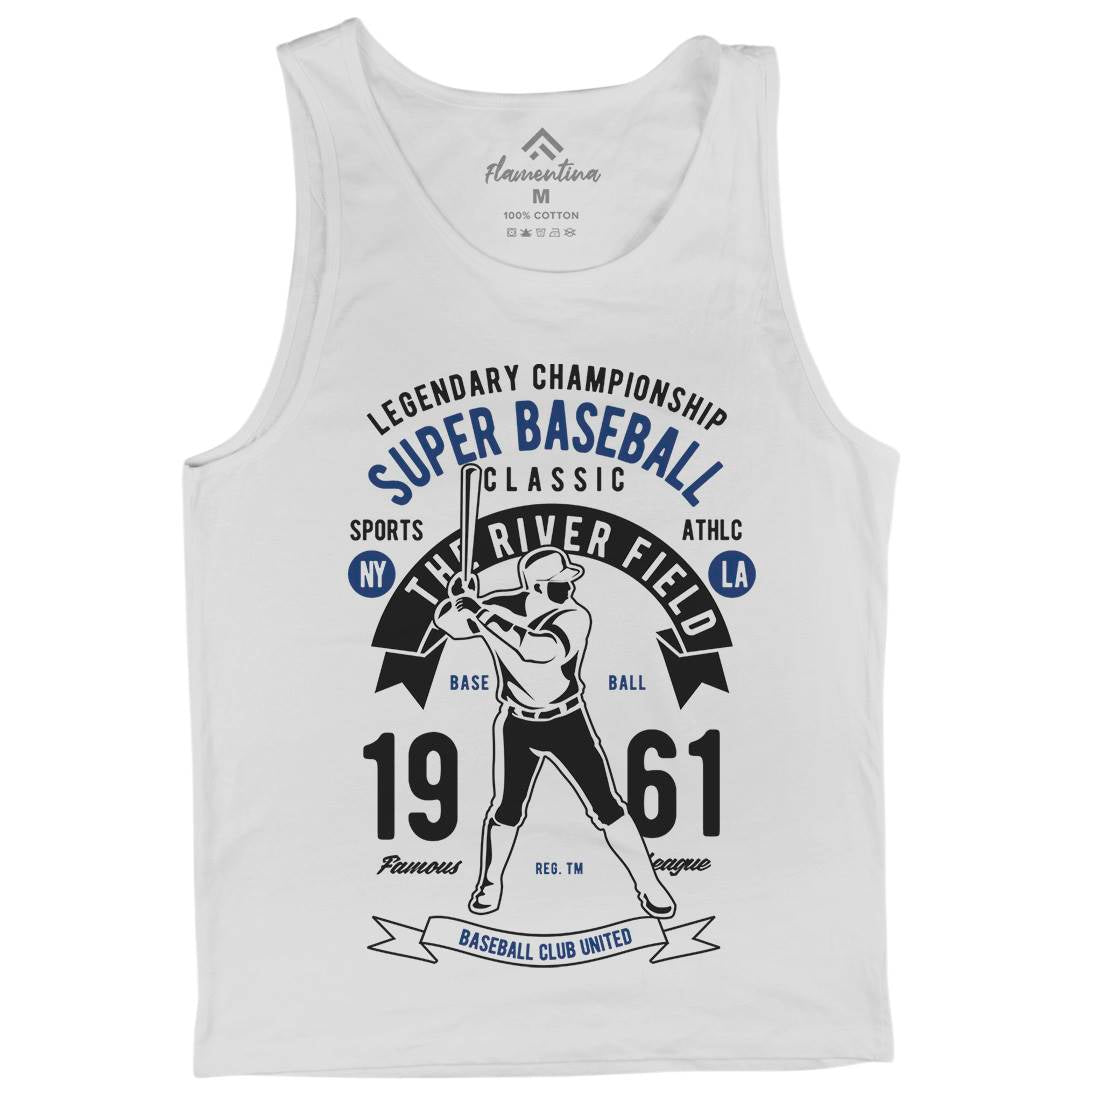 Super Baseball Mens Tank Top Vest Sport B455